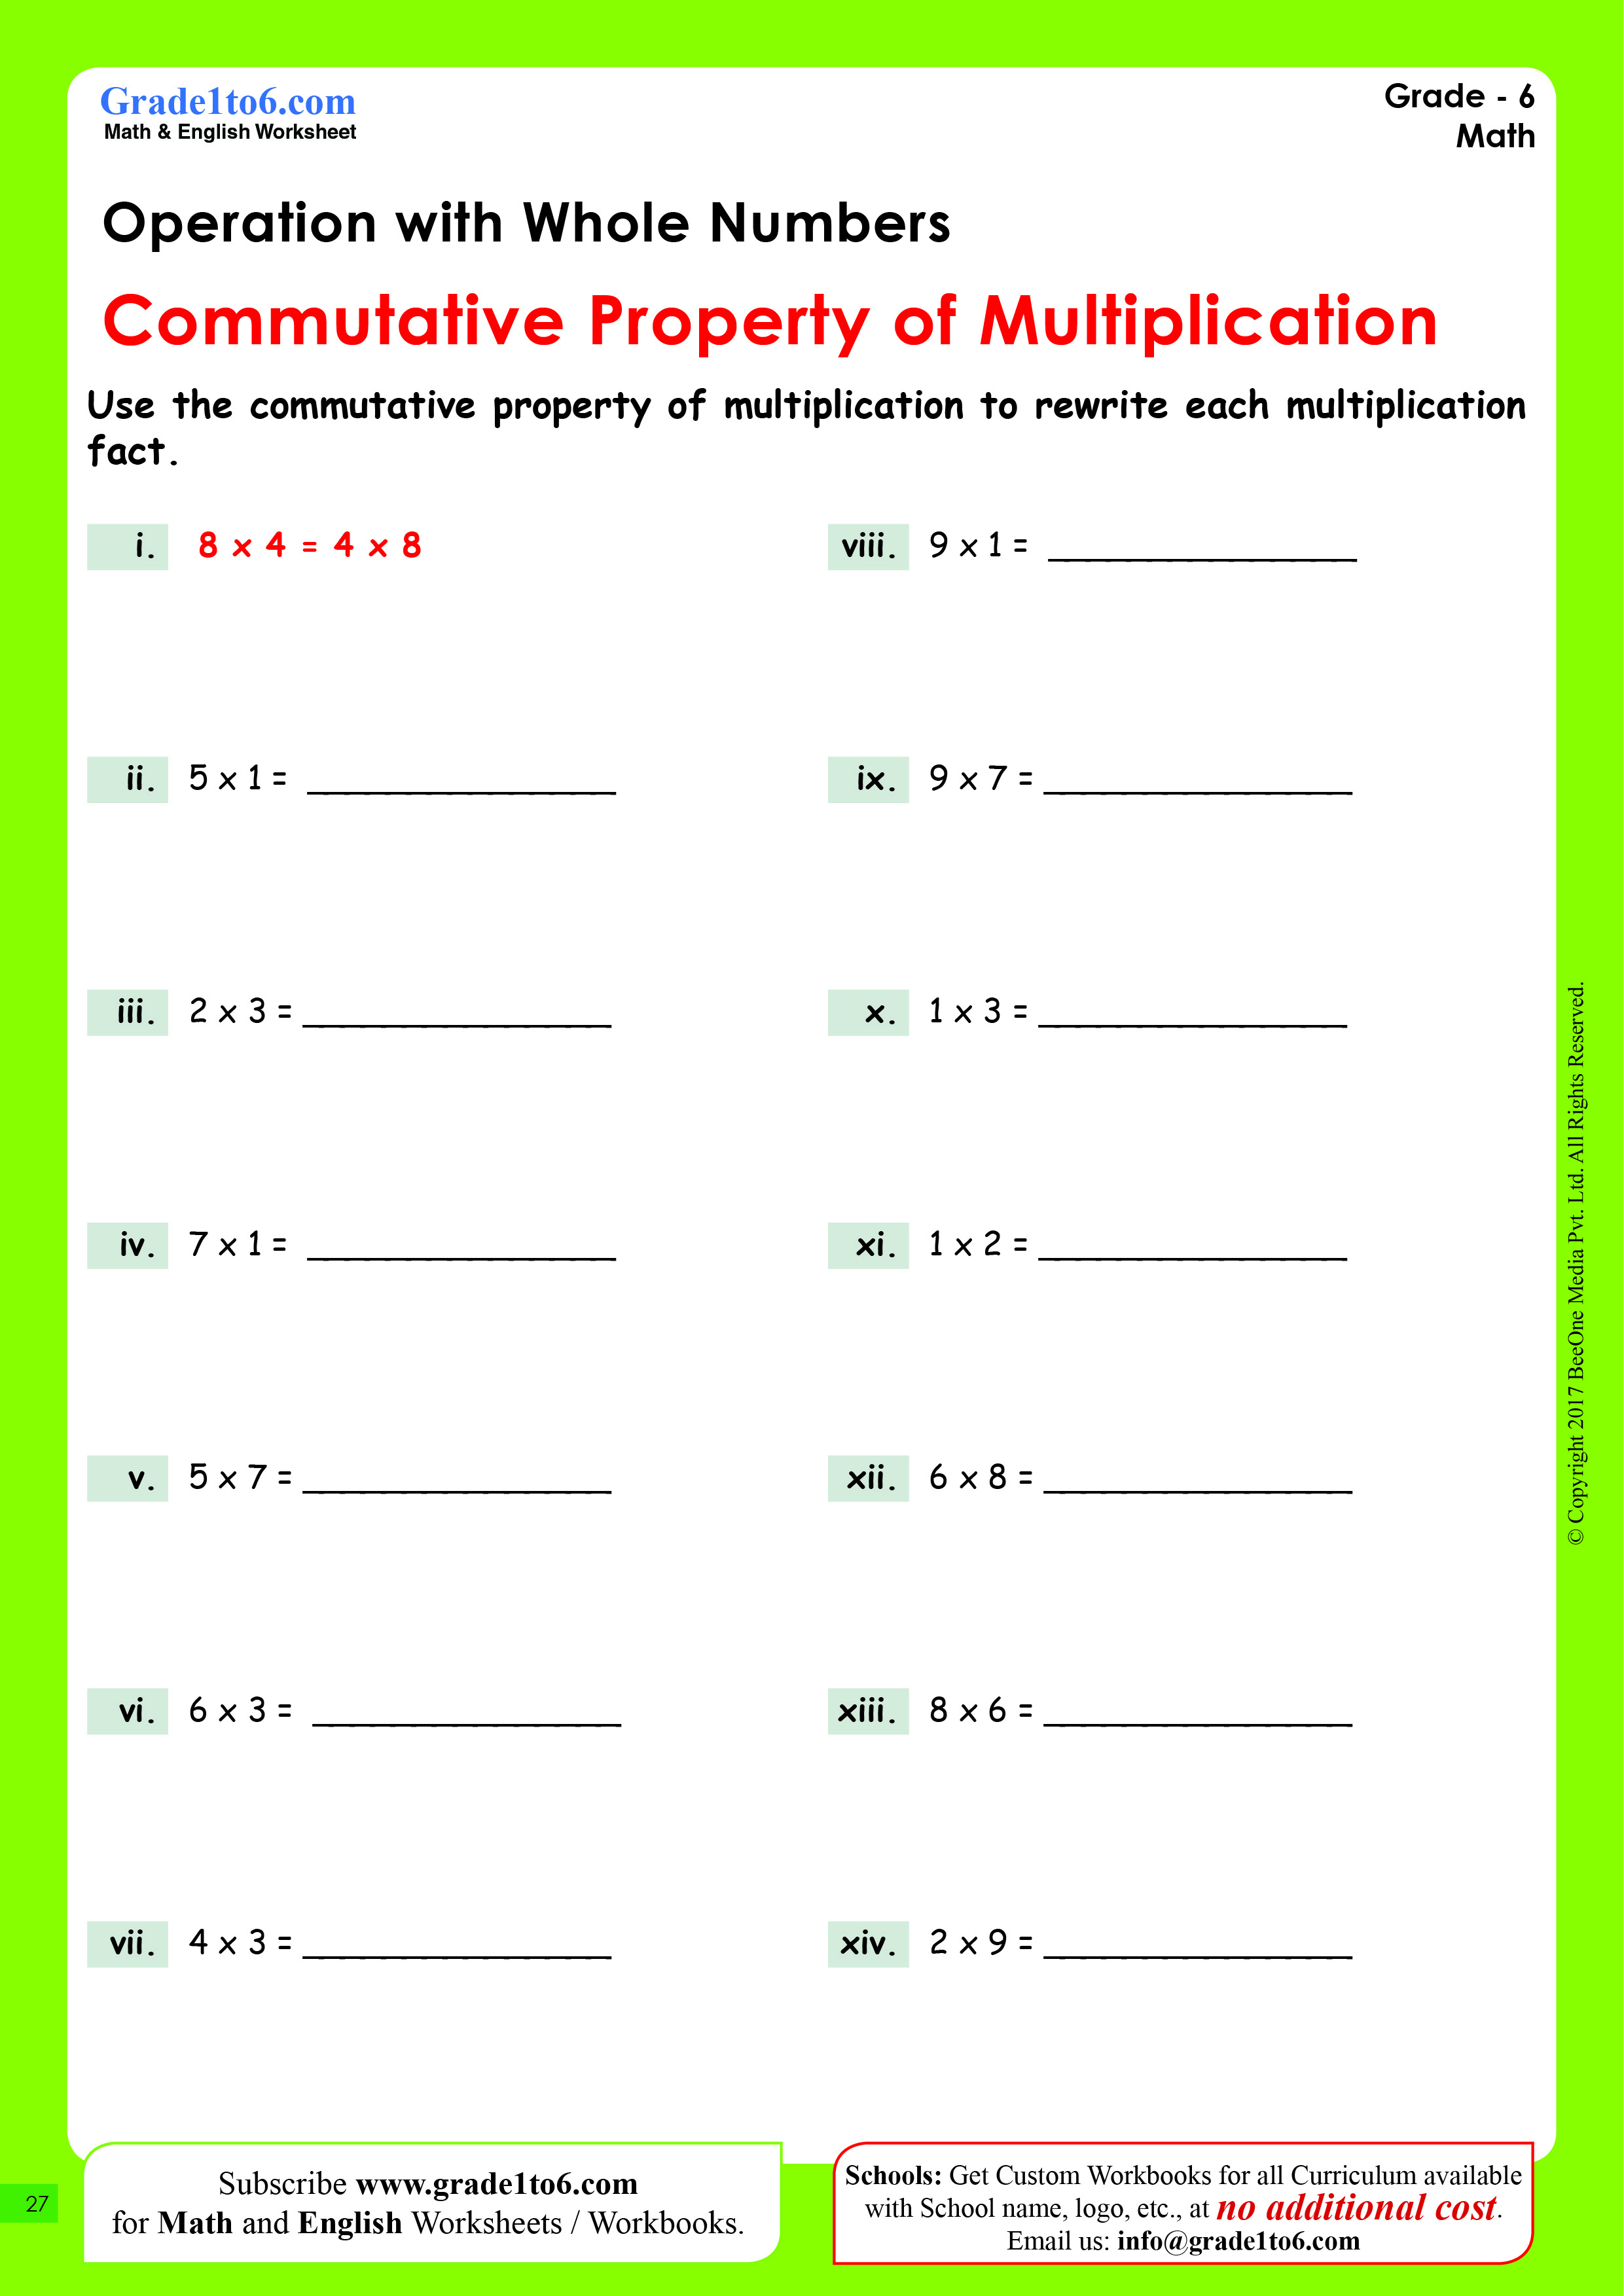 commutative-property-of-multiplication-worksheets-grade-6